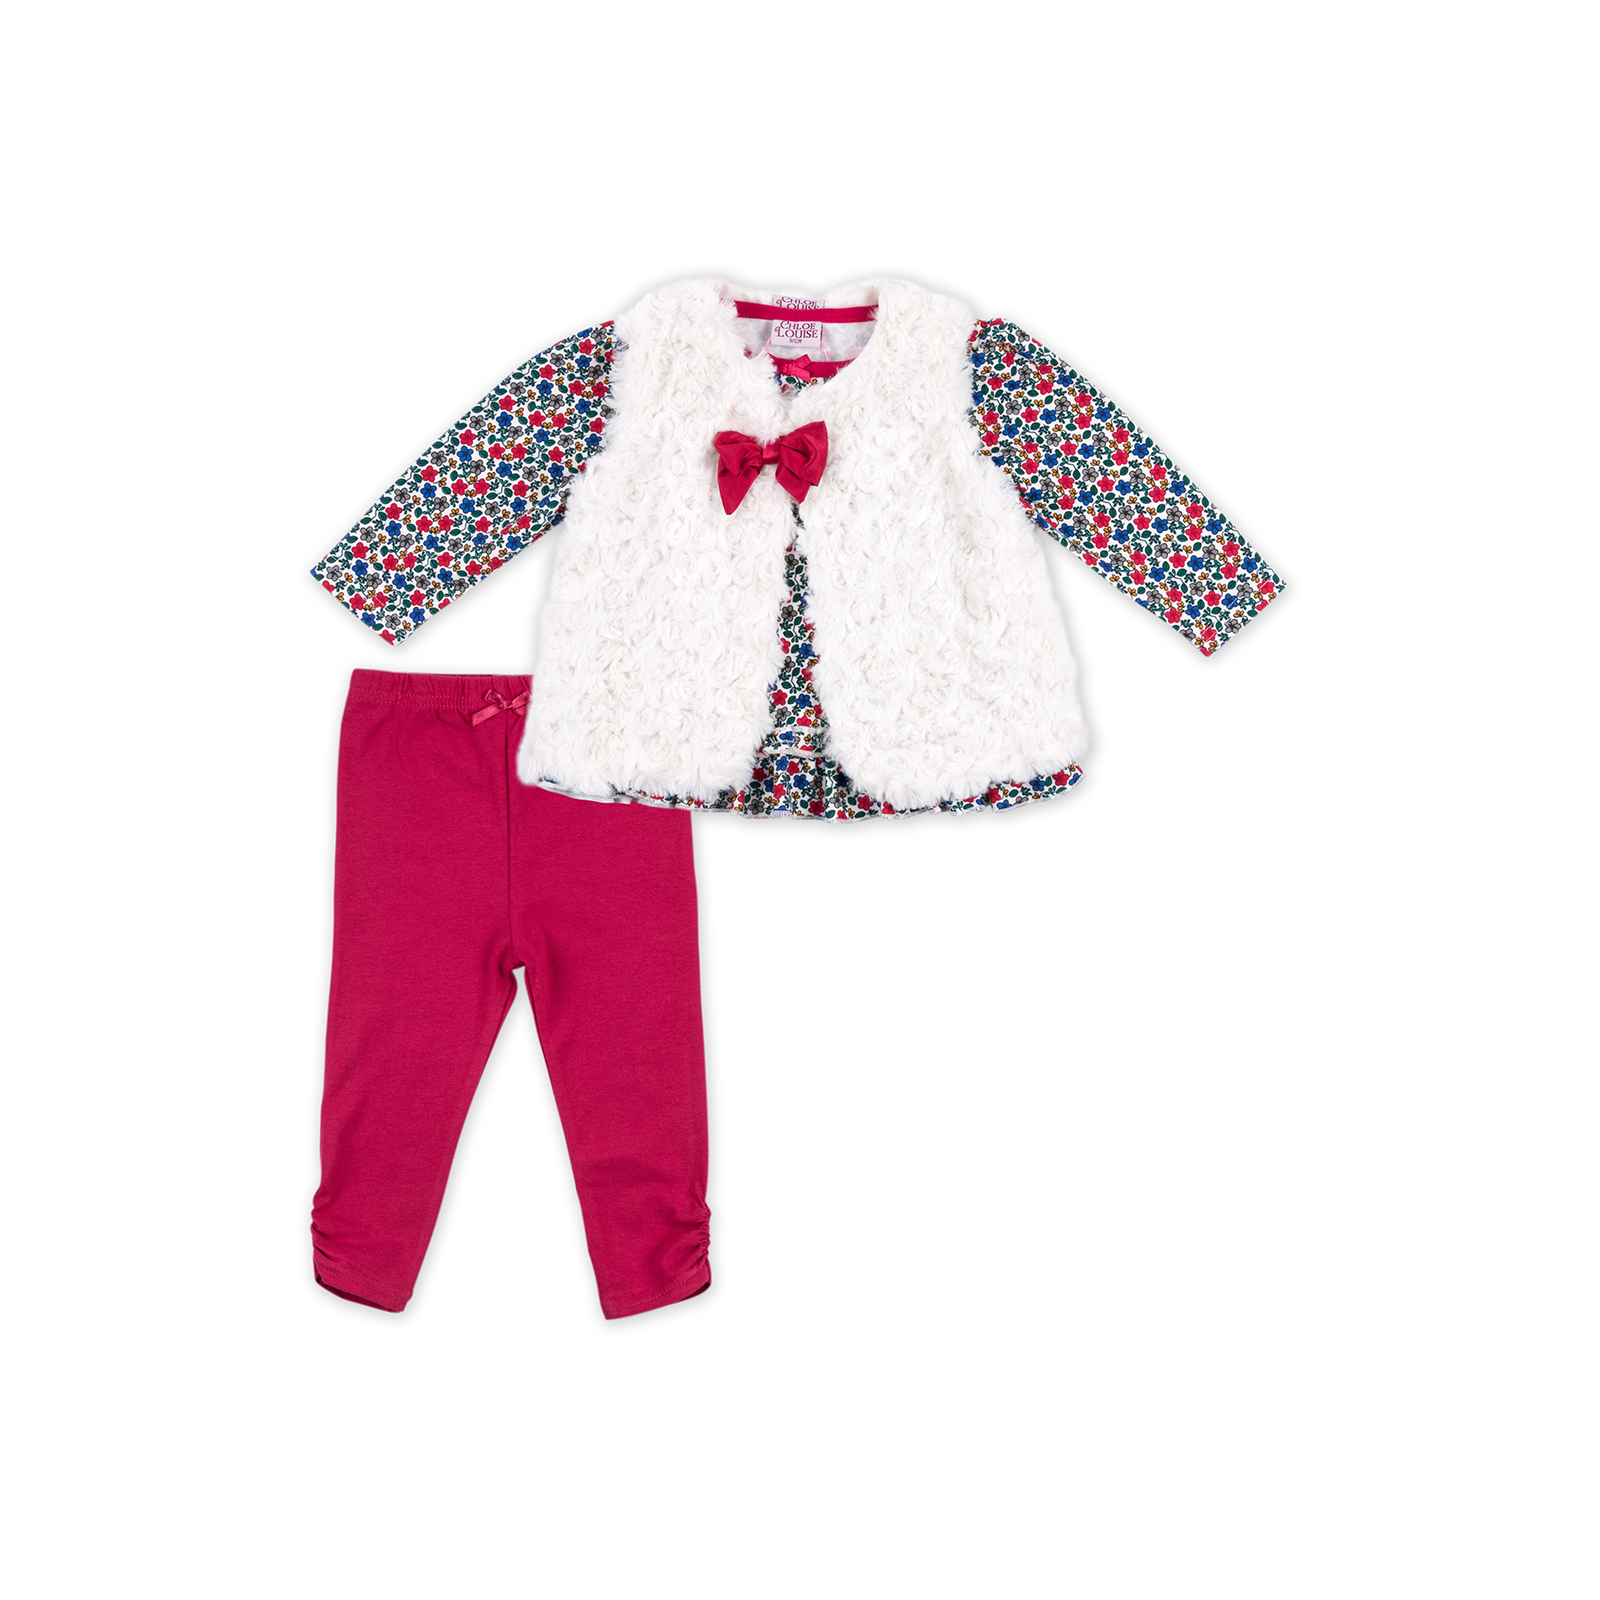 Набір дитячого одягу Luvena Fortuna для дівчаток: кофточка, штанці і хутряна жилетка (G8070.18-24)